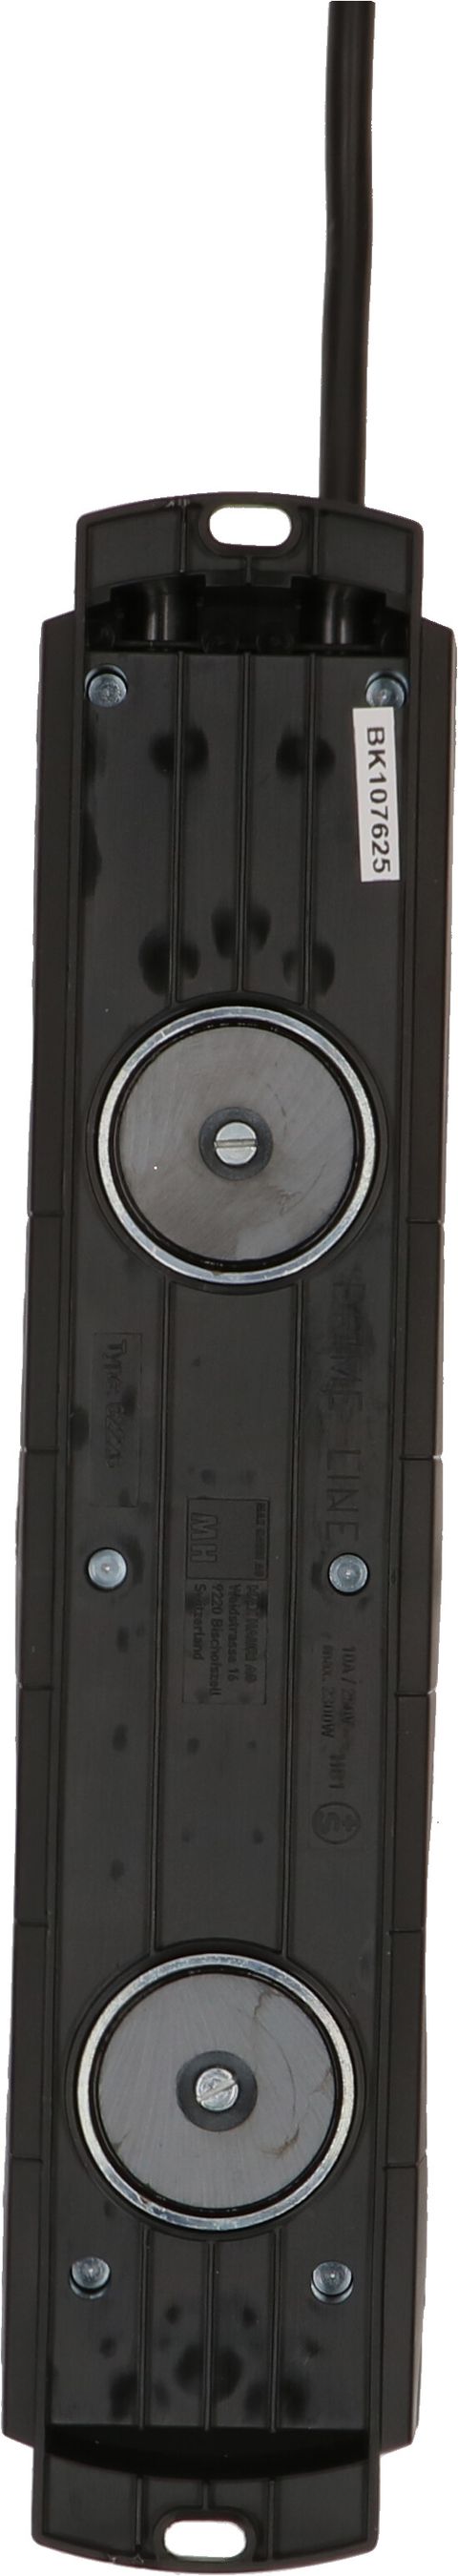 Steckdosenleiste Prime Line 6x Typ 13 schwarz Schalter Magnet